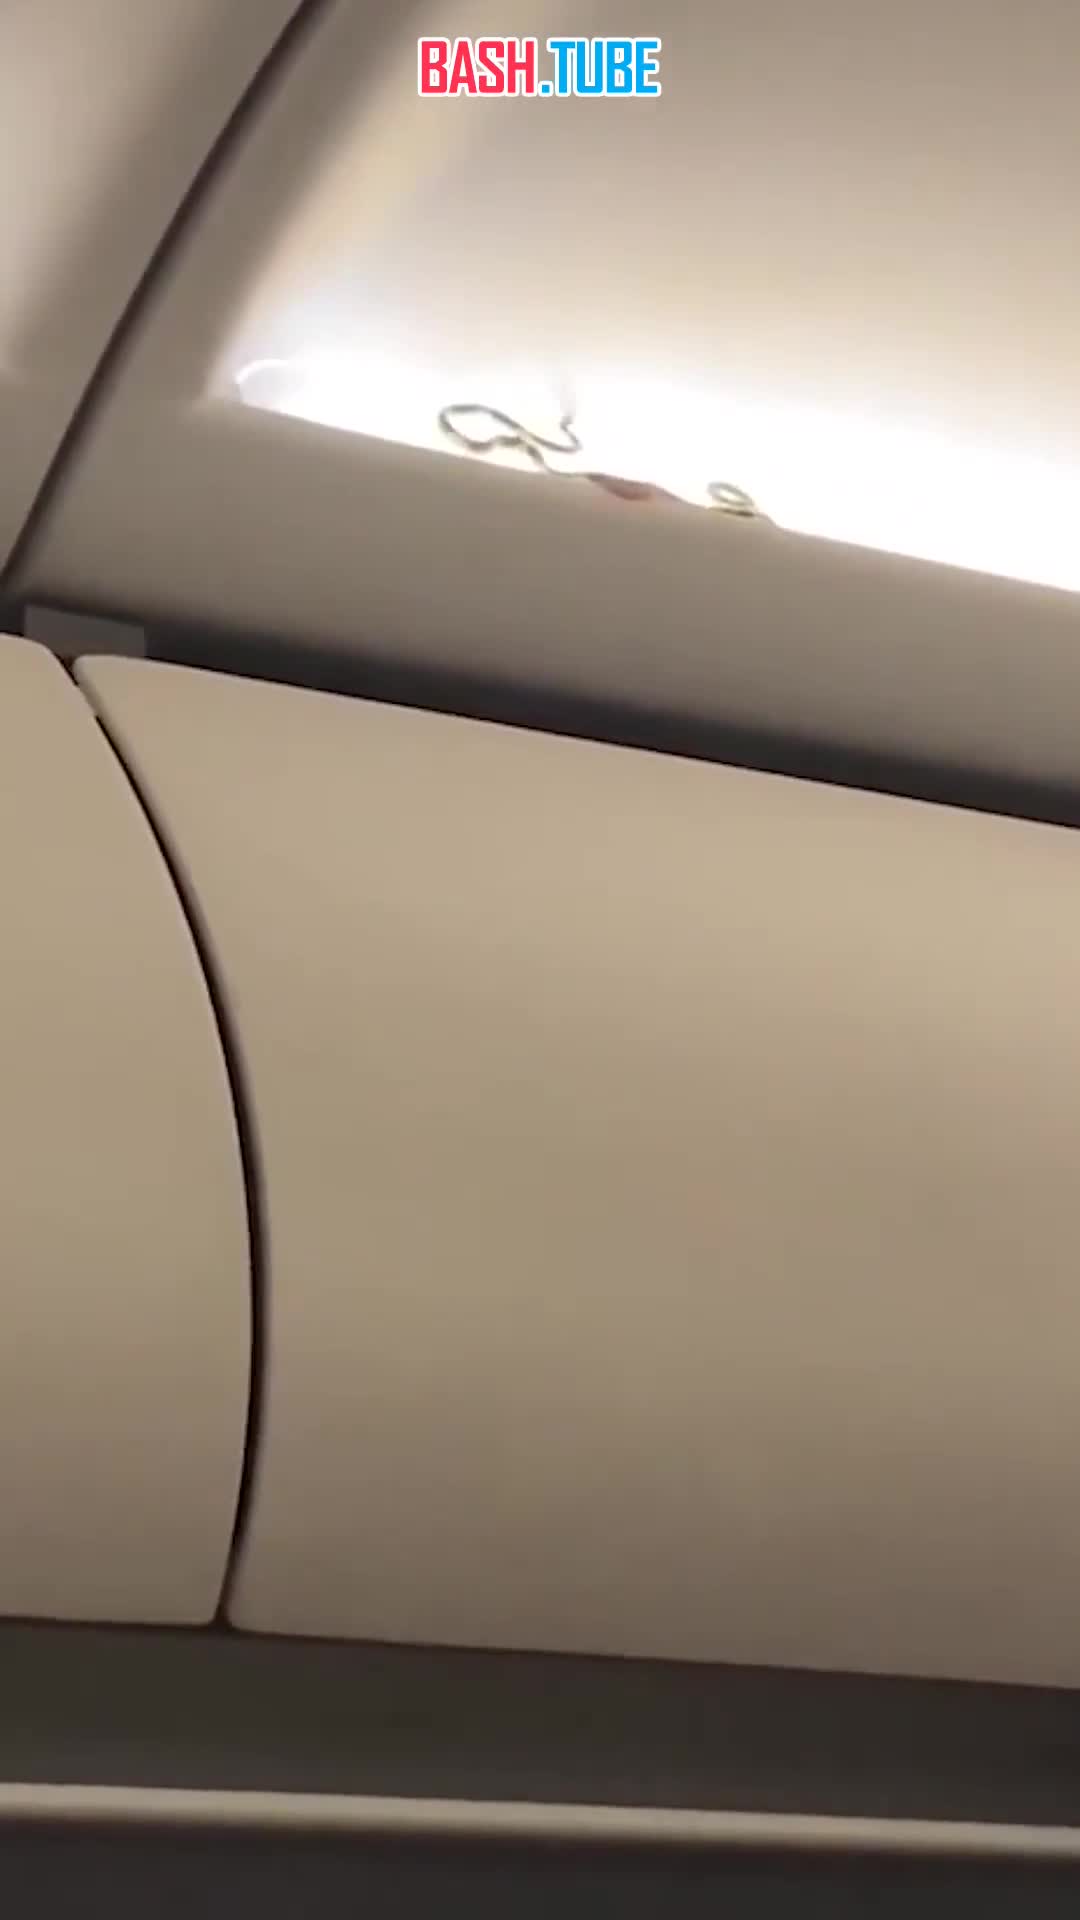  Змея вызвала панику среди пассажиров самолета, направлявшегося из Бангкока в Пхукет